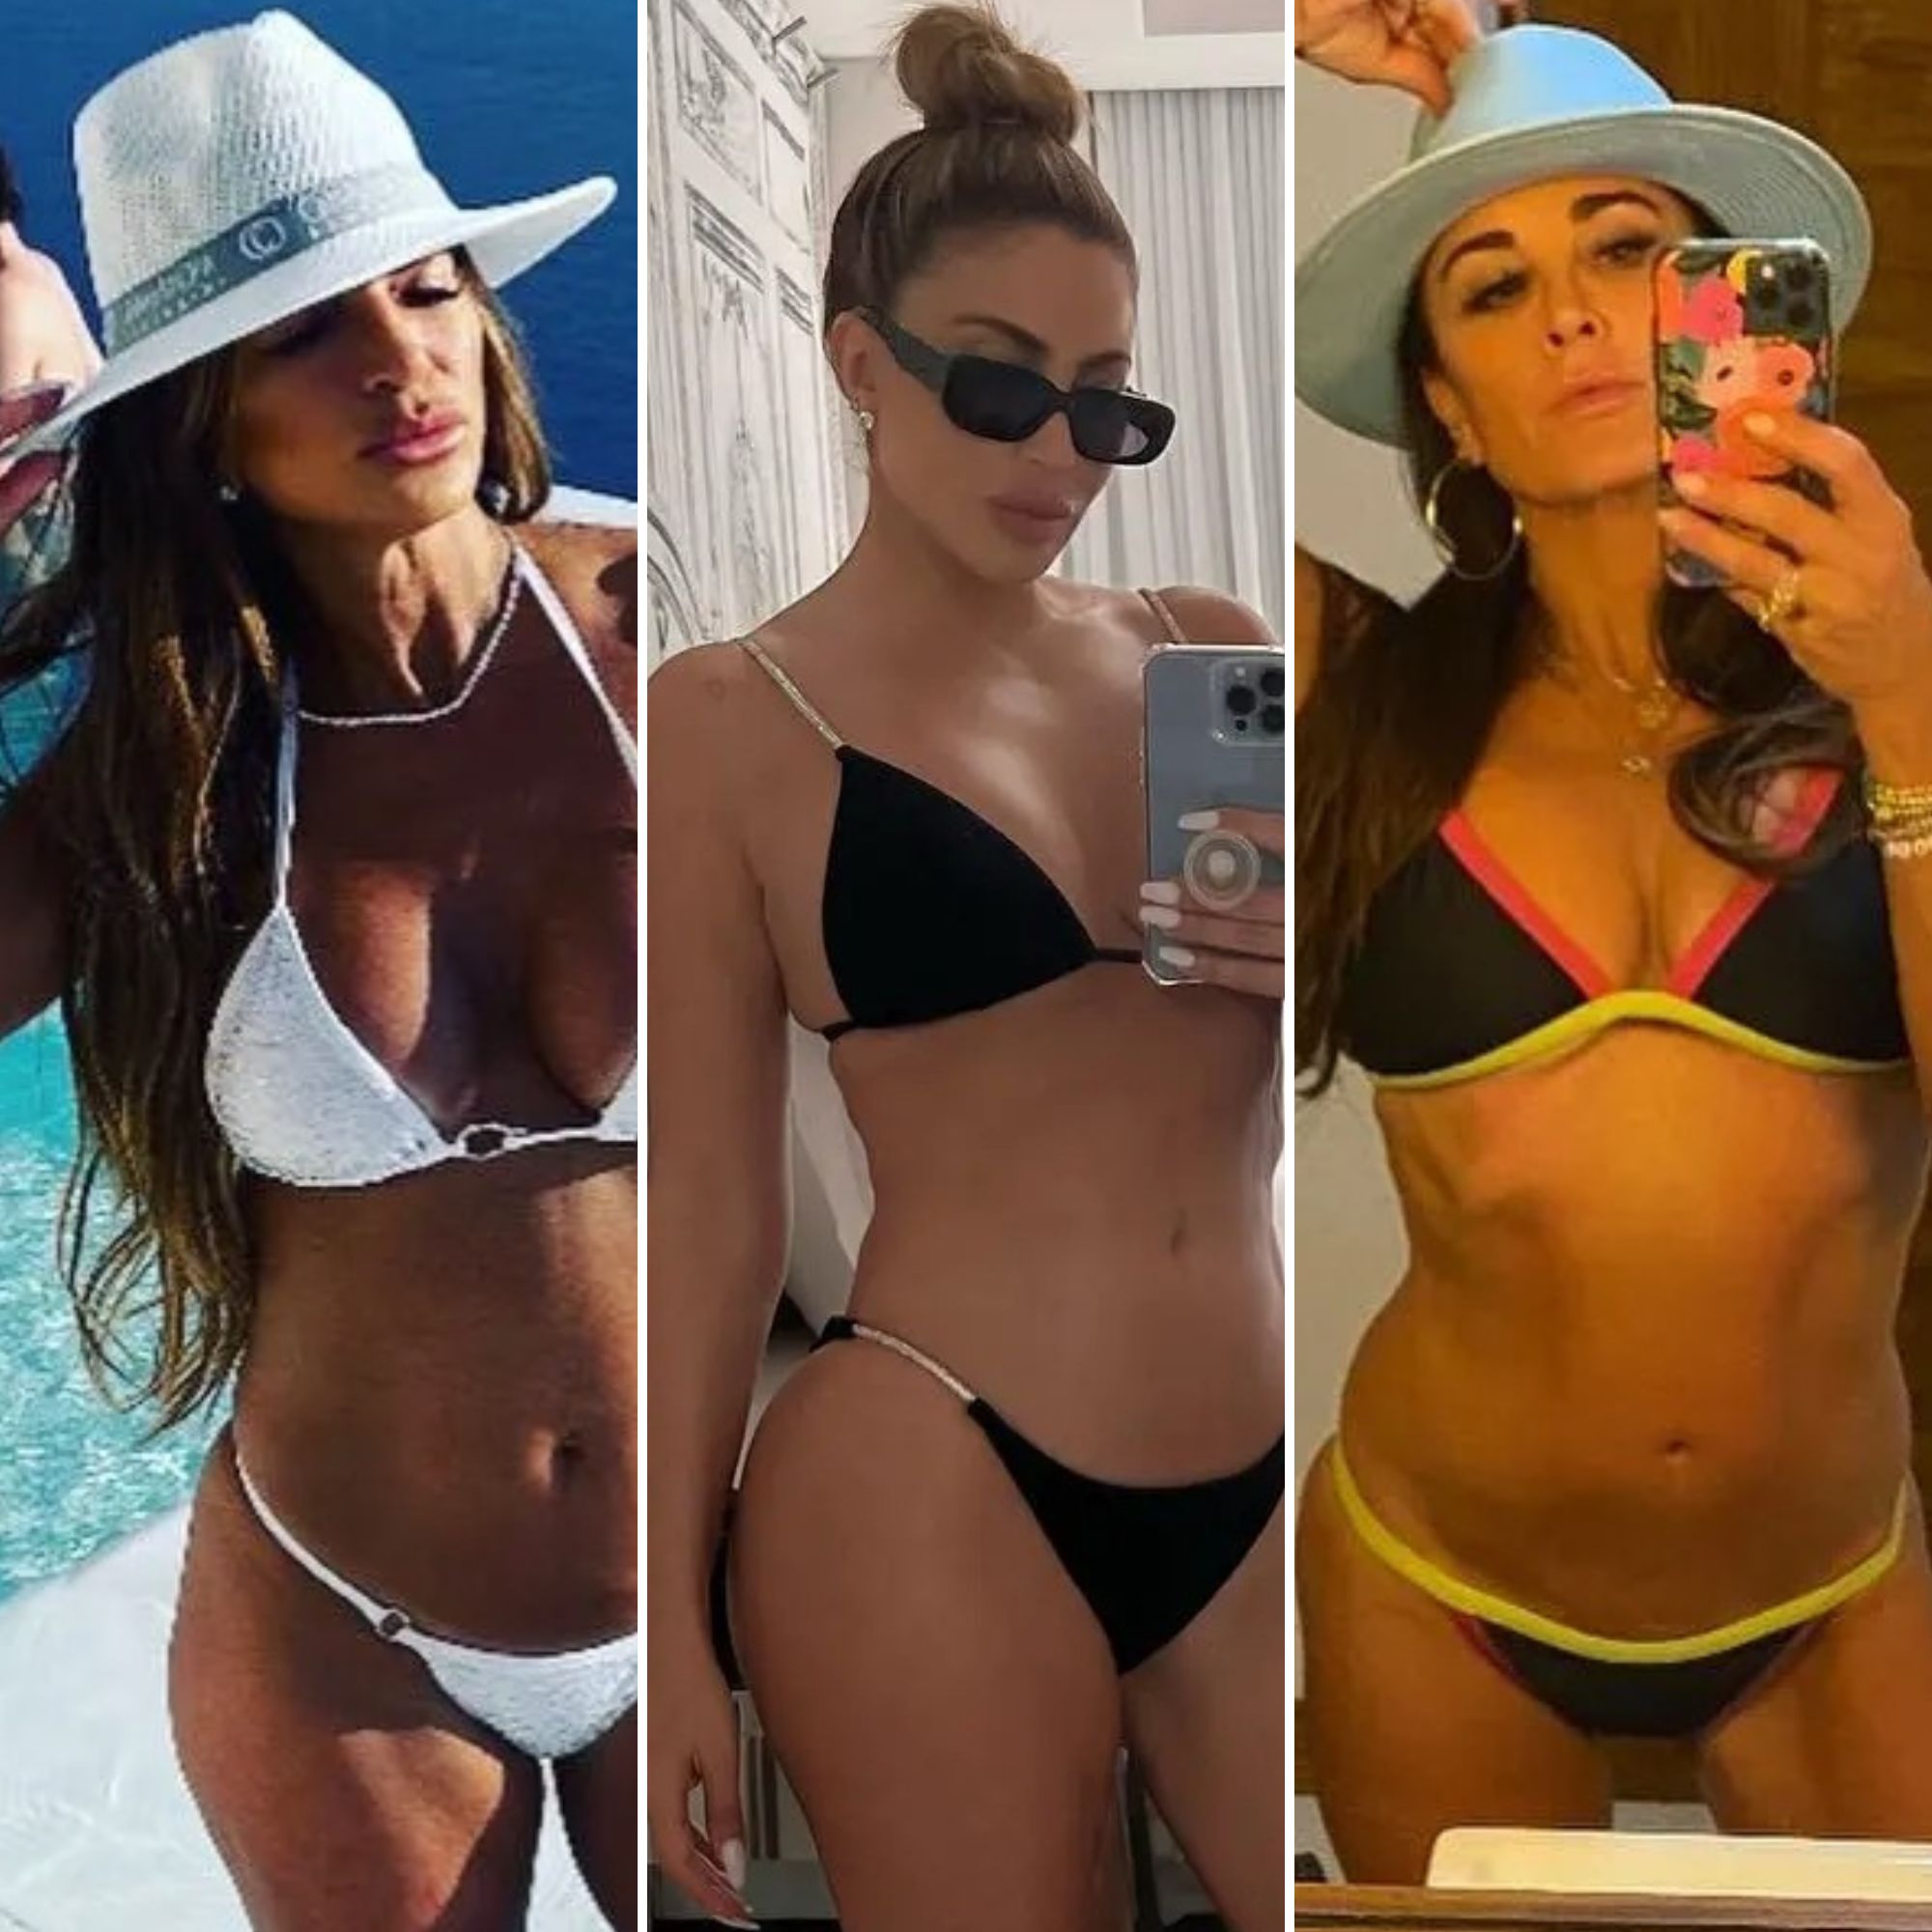 Hot Housewife Nude Beach - Real Housewives' Bikini Photos: Teresa, Luann, Kim and More